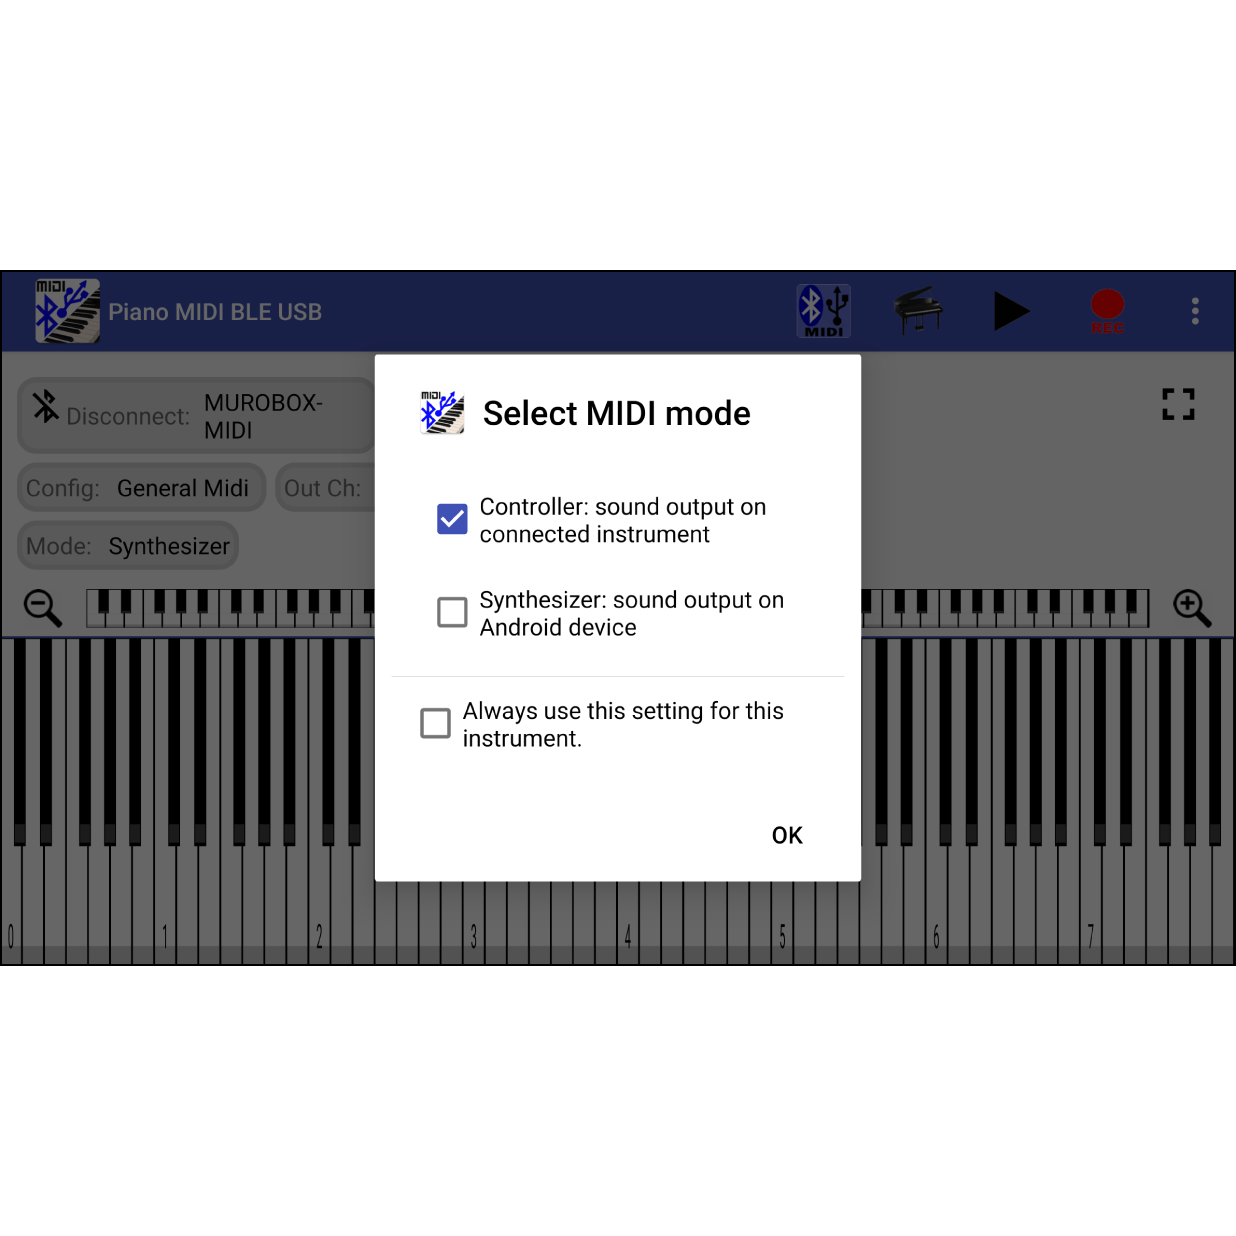 4. 选择MIDI模式 如果有搜寻到音乐盒，则会显示名称为”MUROBOX-MIDI”。在 “Select MIDI mode”选项中，选择”Controller”，按”OK”。